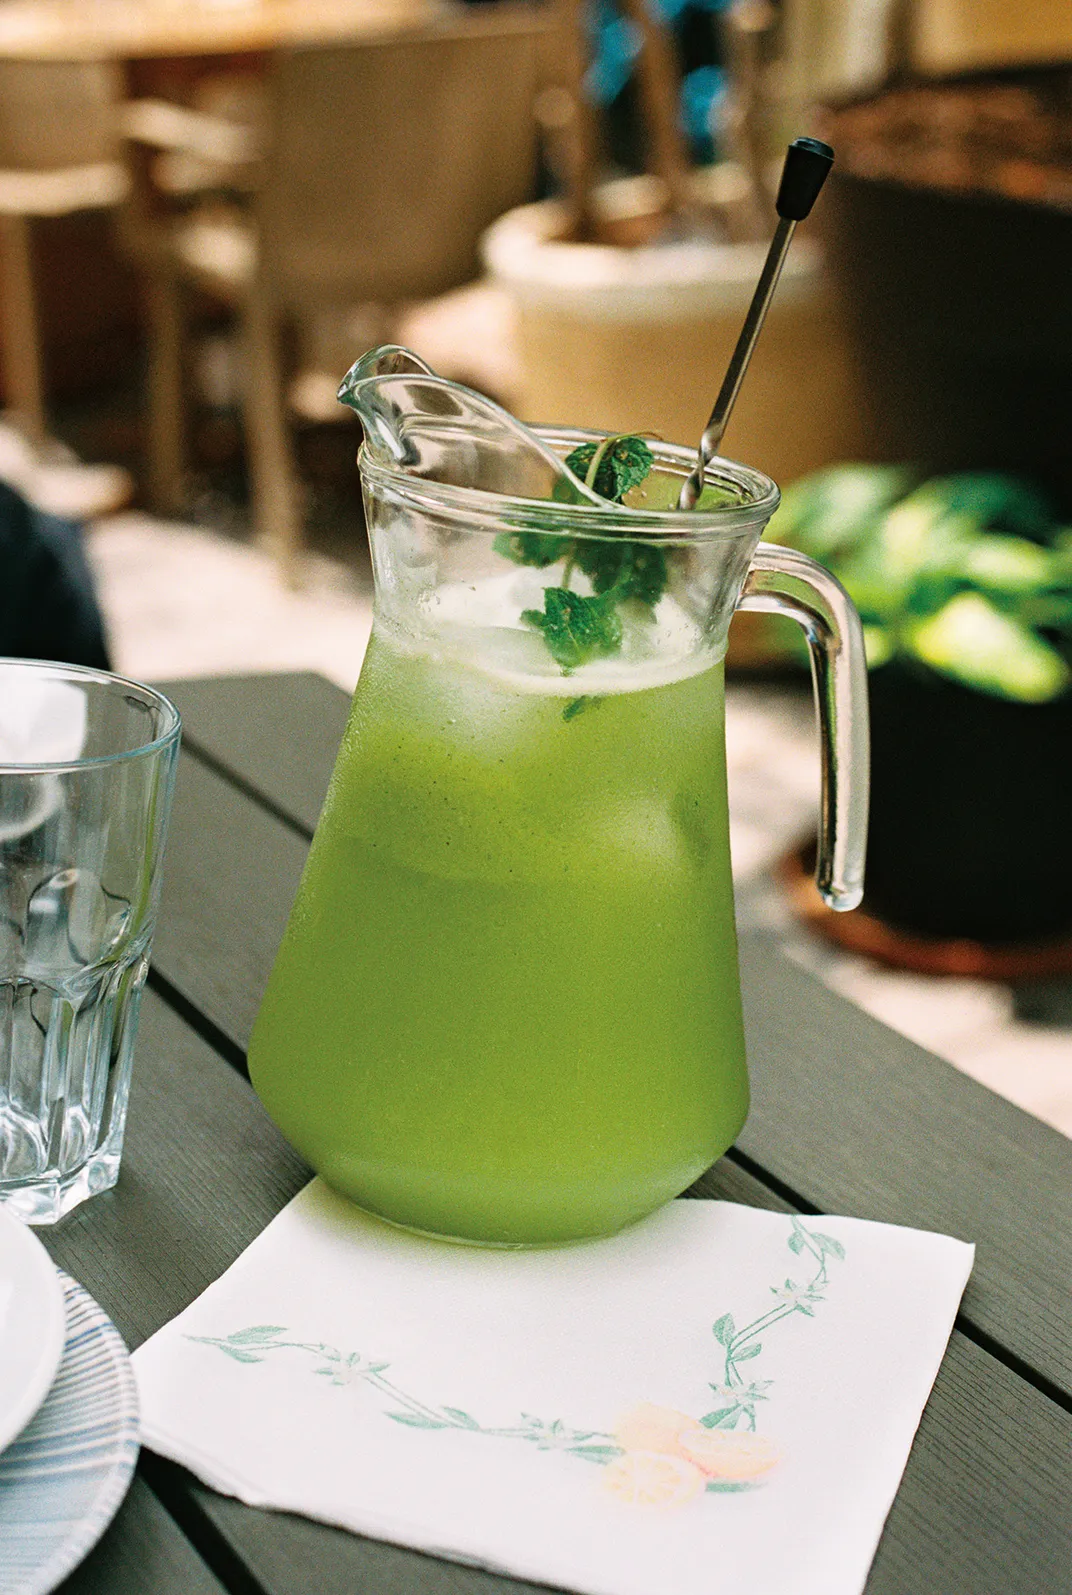 a pitcher of green lemonade